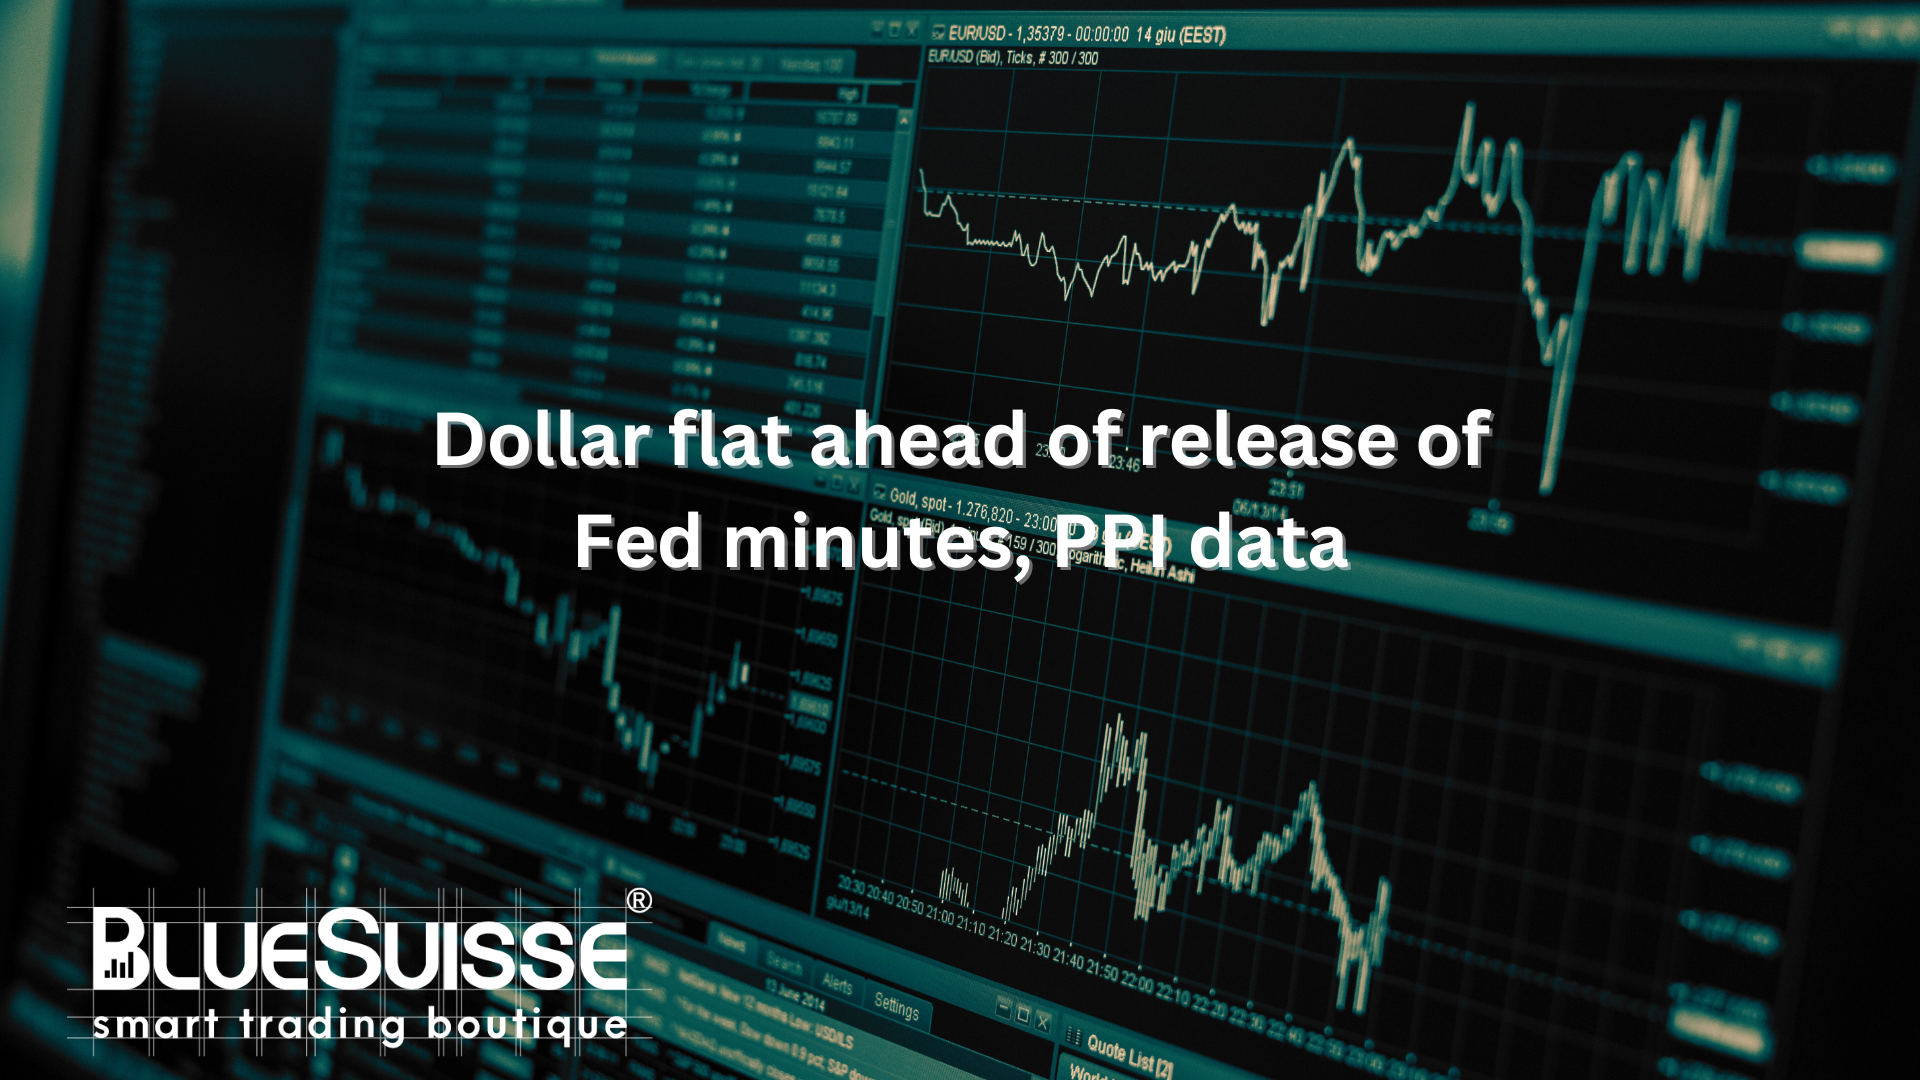 El dólar se mantiene plano a la espera de las actas de la Fed y los datos del IPP